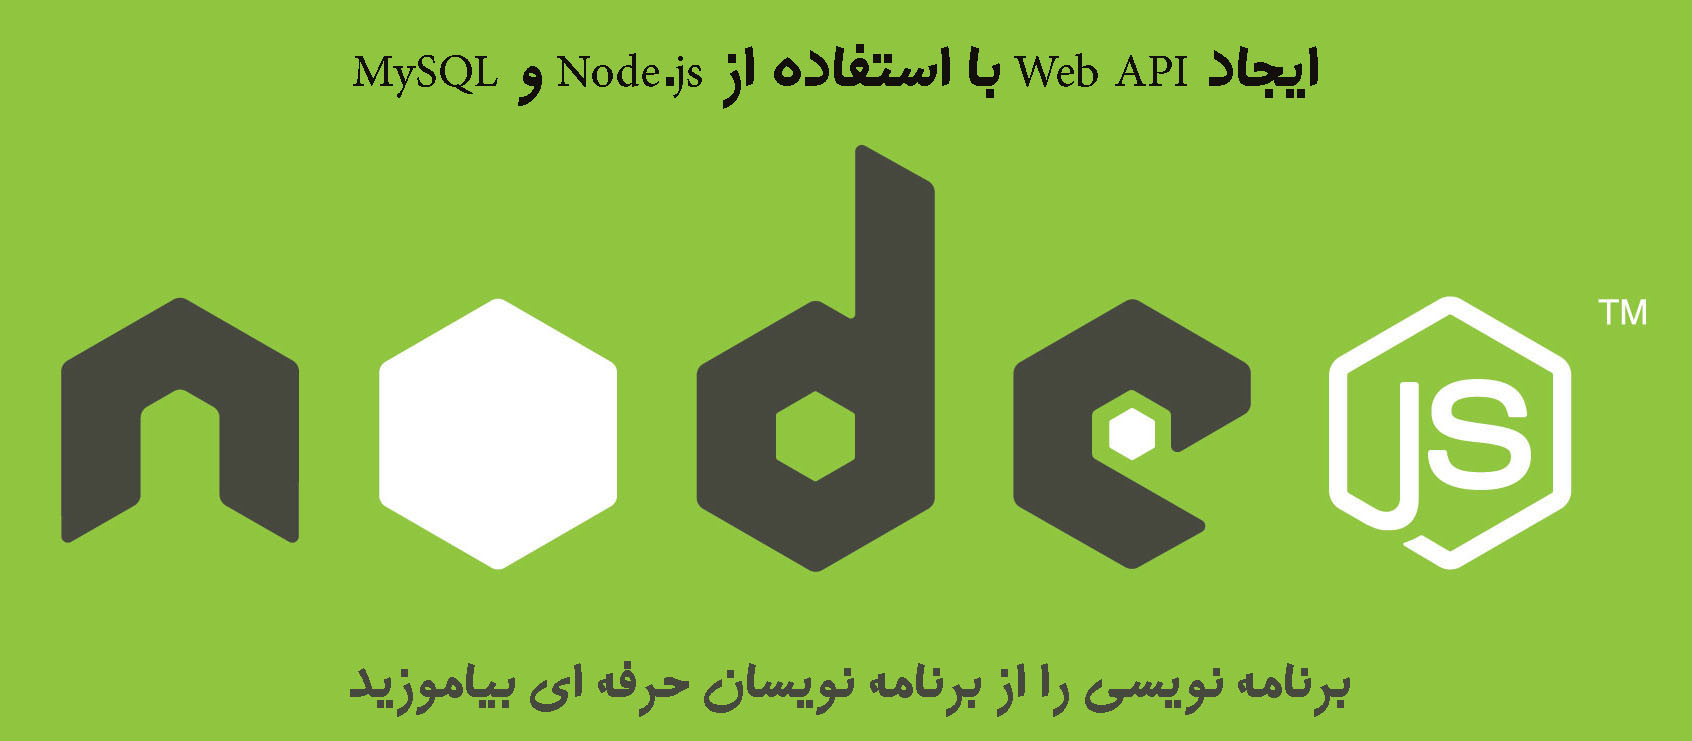 ایجاد Web API با استفاده از Node.js و MySQL